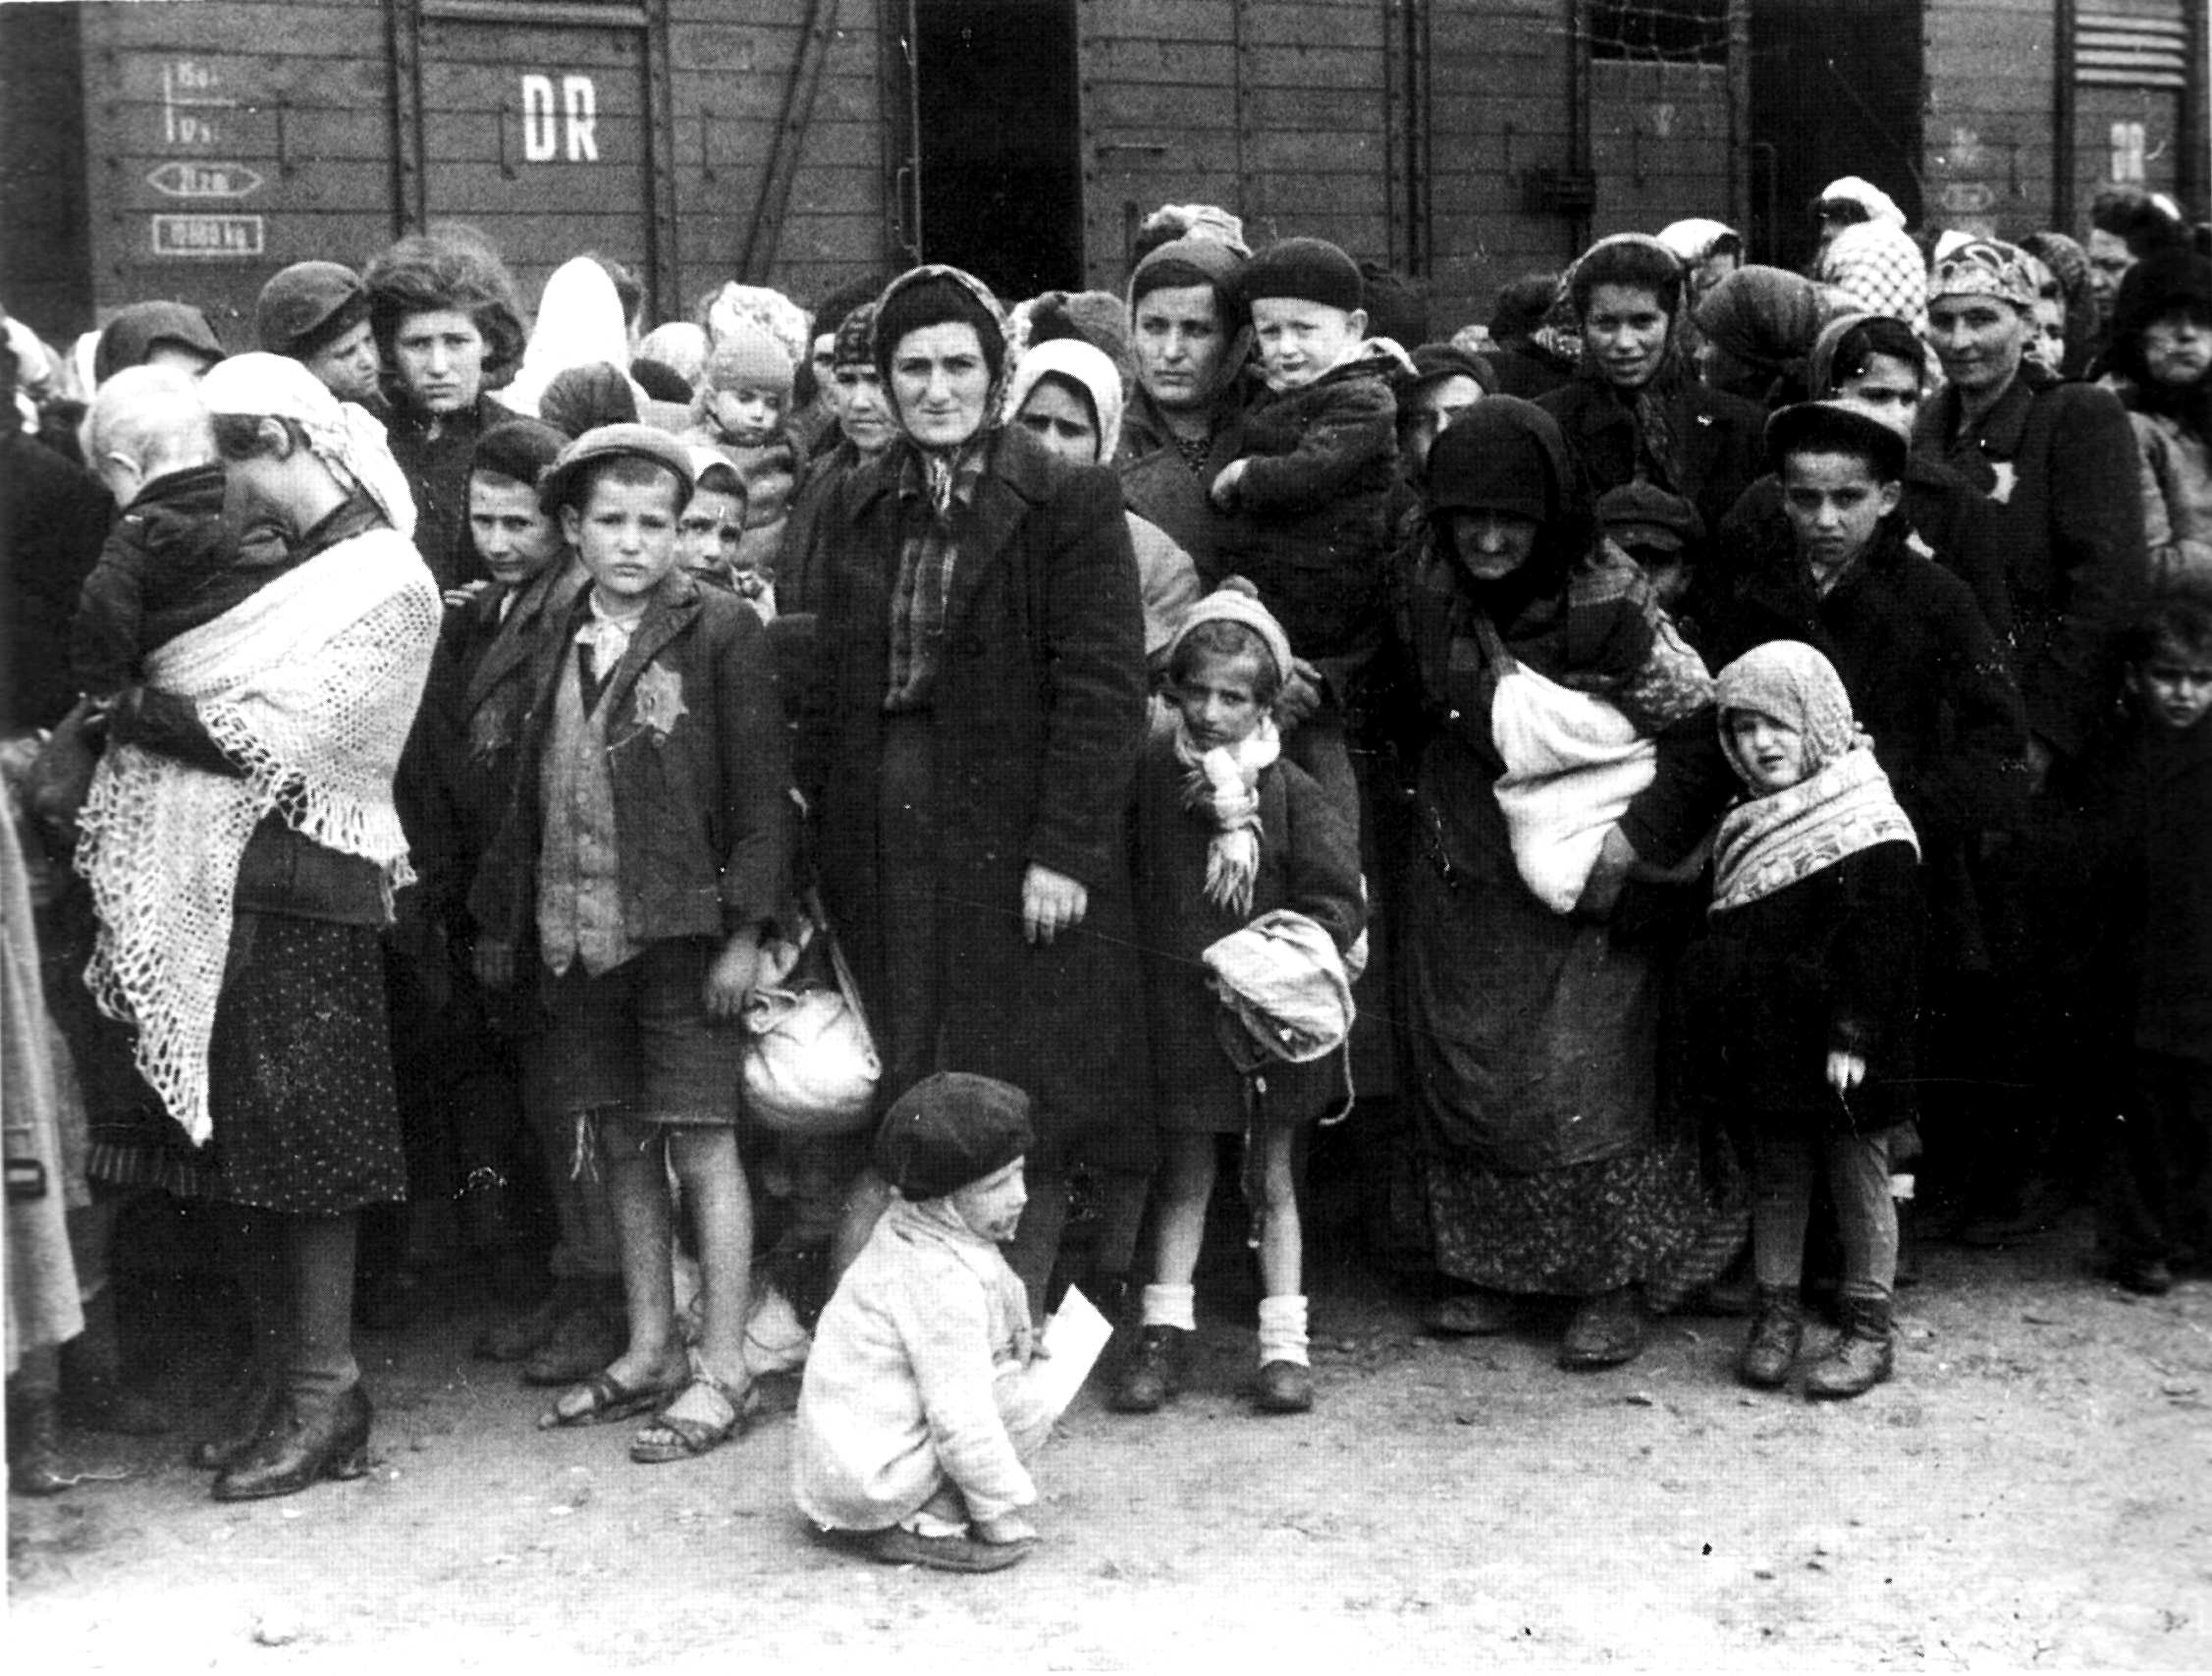 Bundesarchiv_Bild_183-N0827-318%2C_KZ_Auschwitz%2C_Ankunft_ungarischer_Juden.jpg